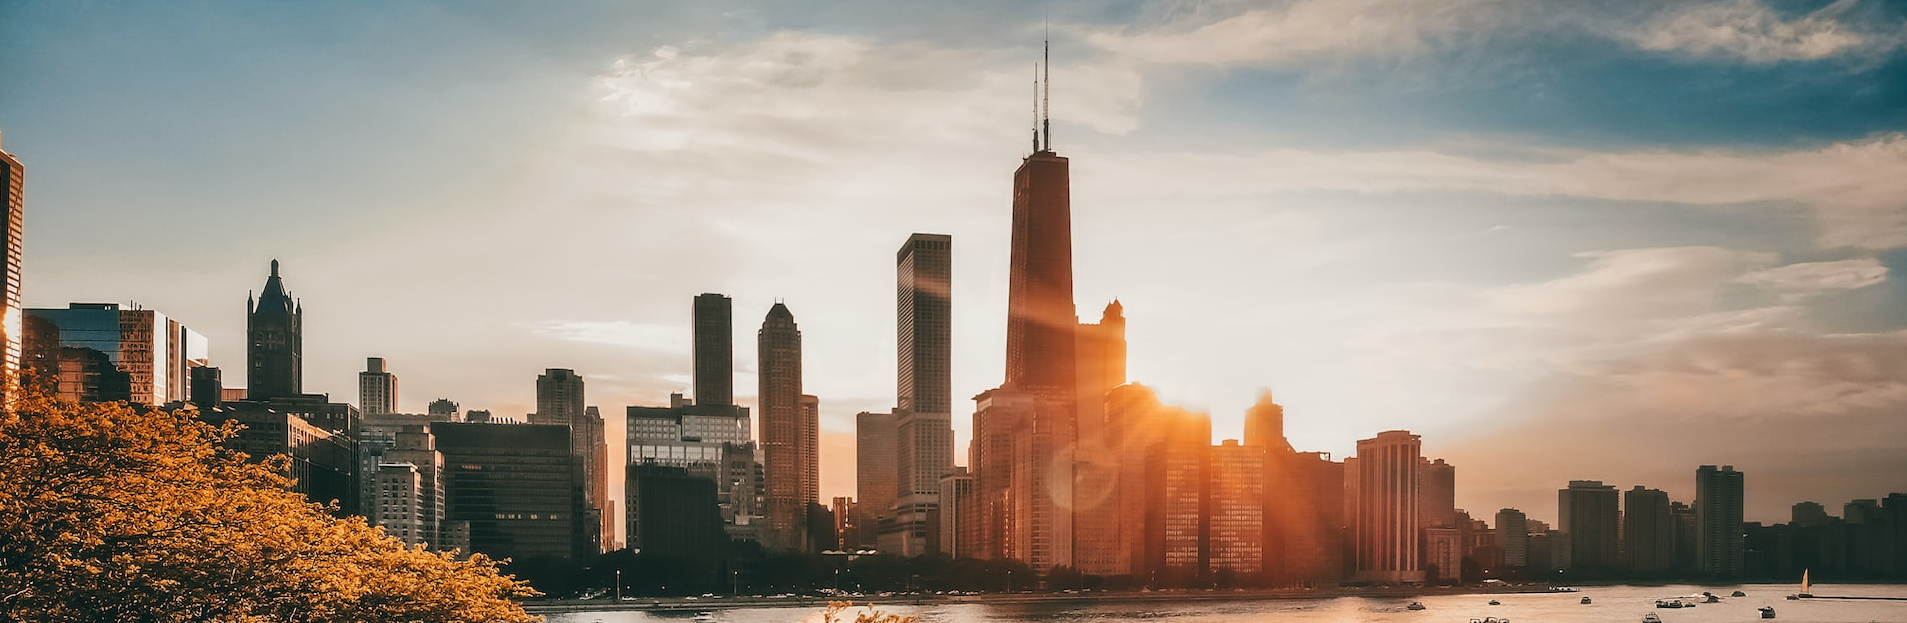 Lo skyline di Chicago al tramonto